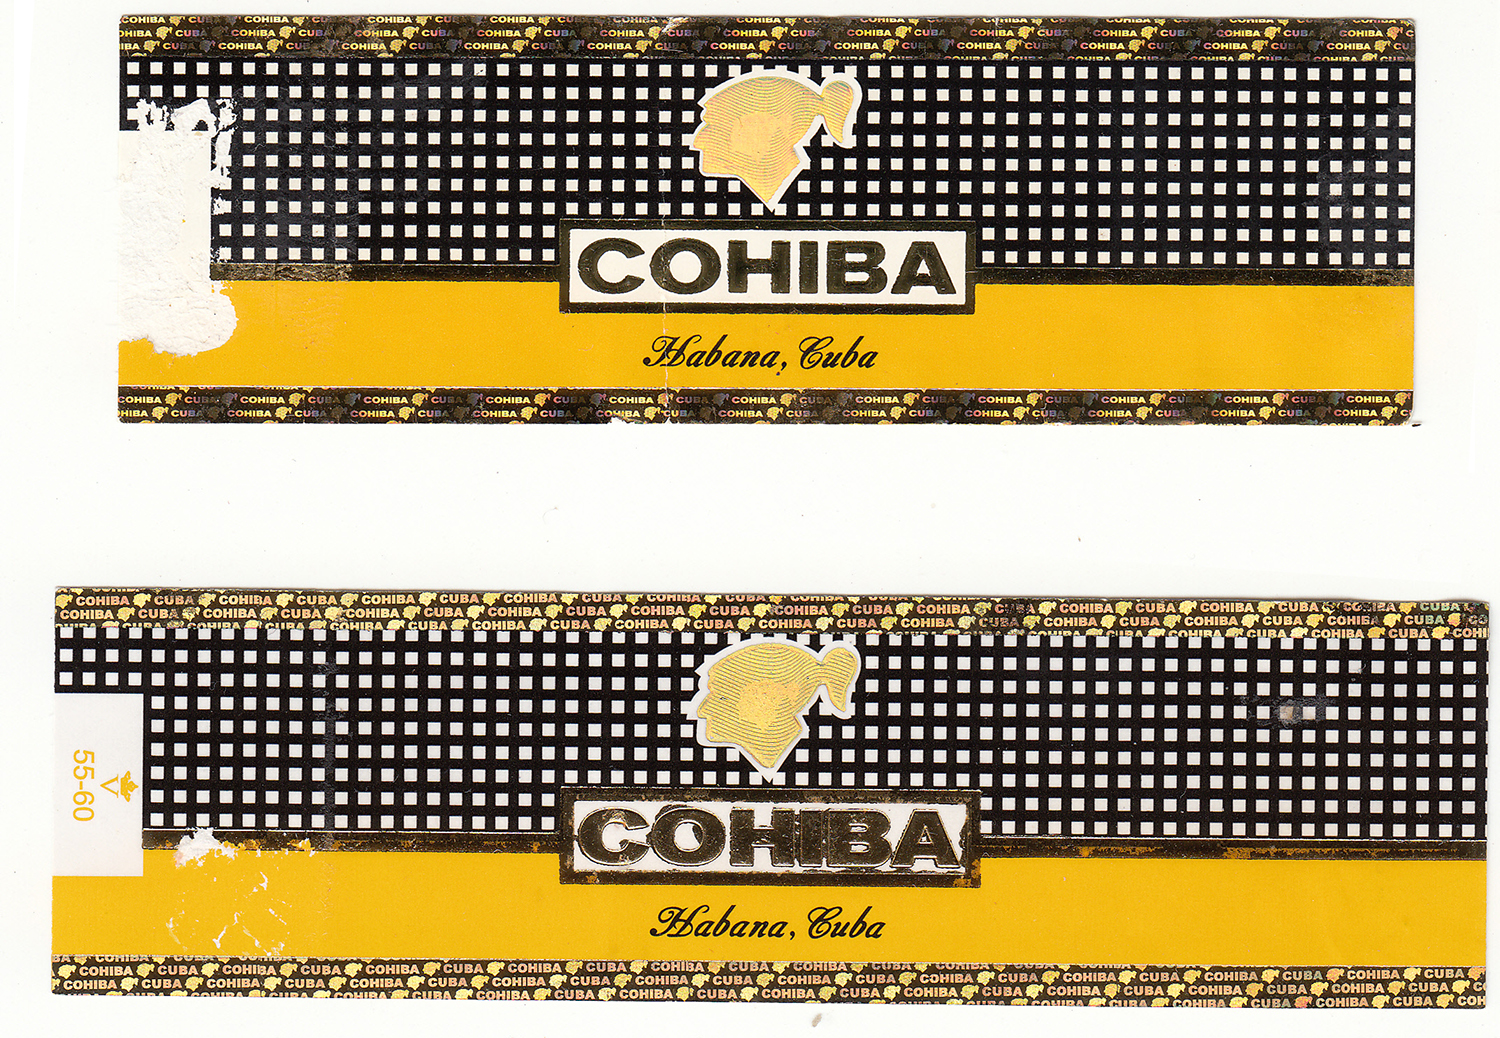 cohiba cigar labels